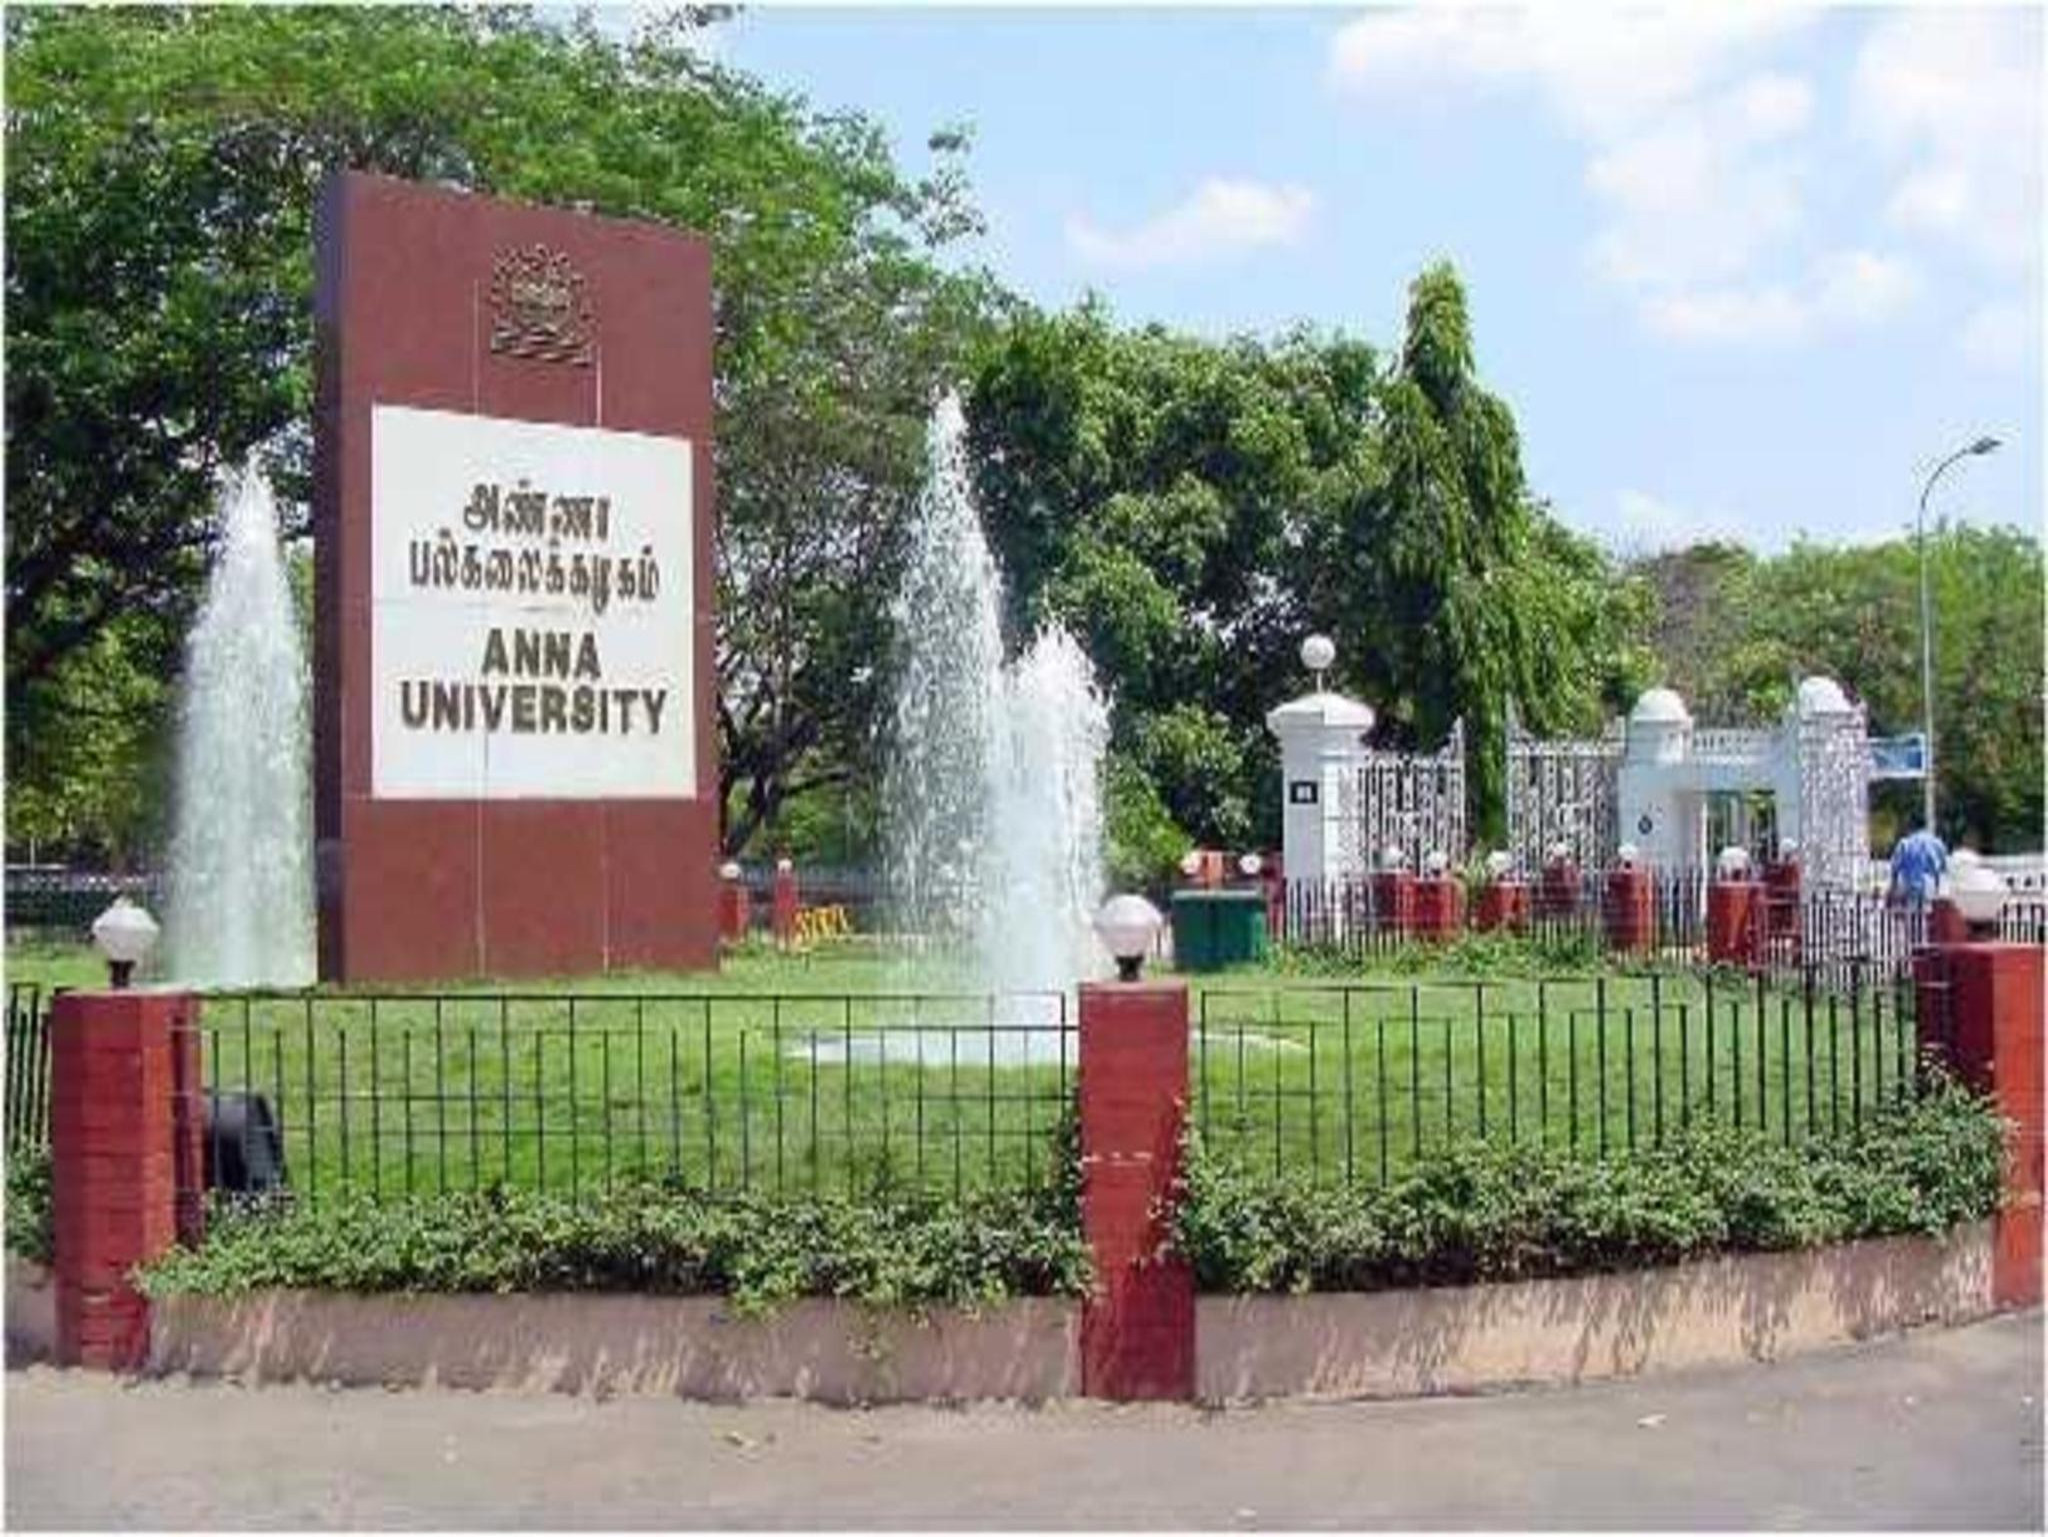 Gita, Upanishads in Anna University curriculum draws flak